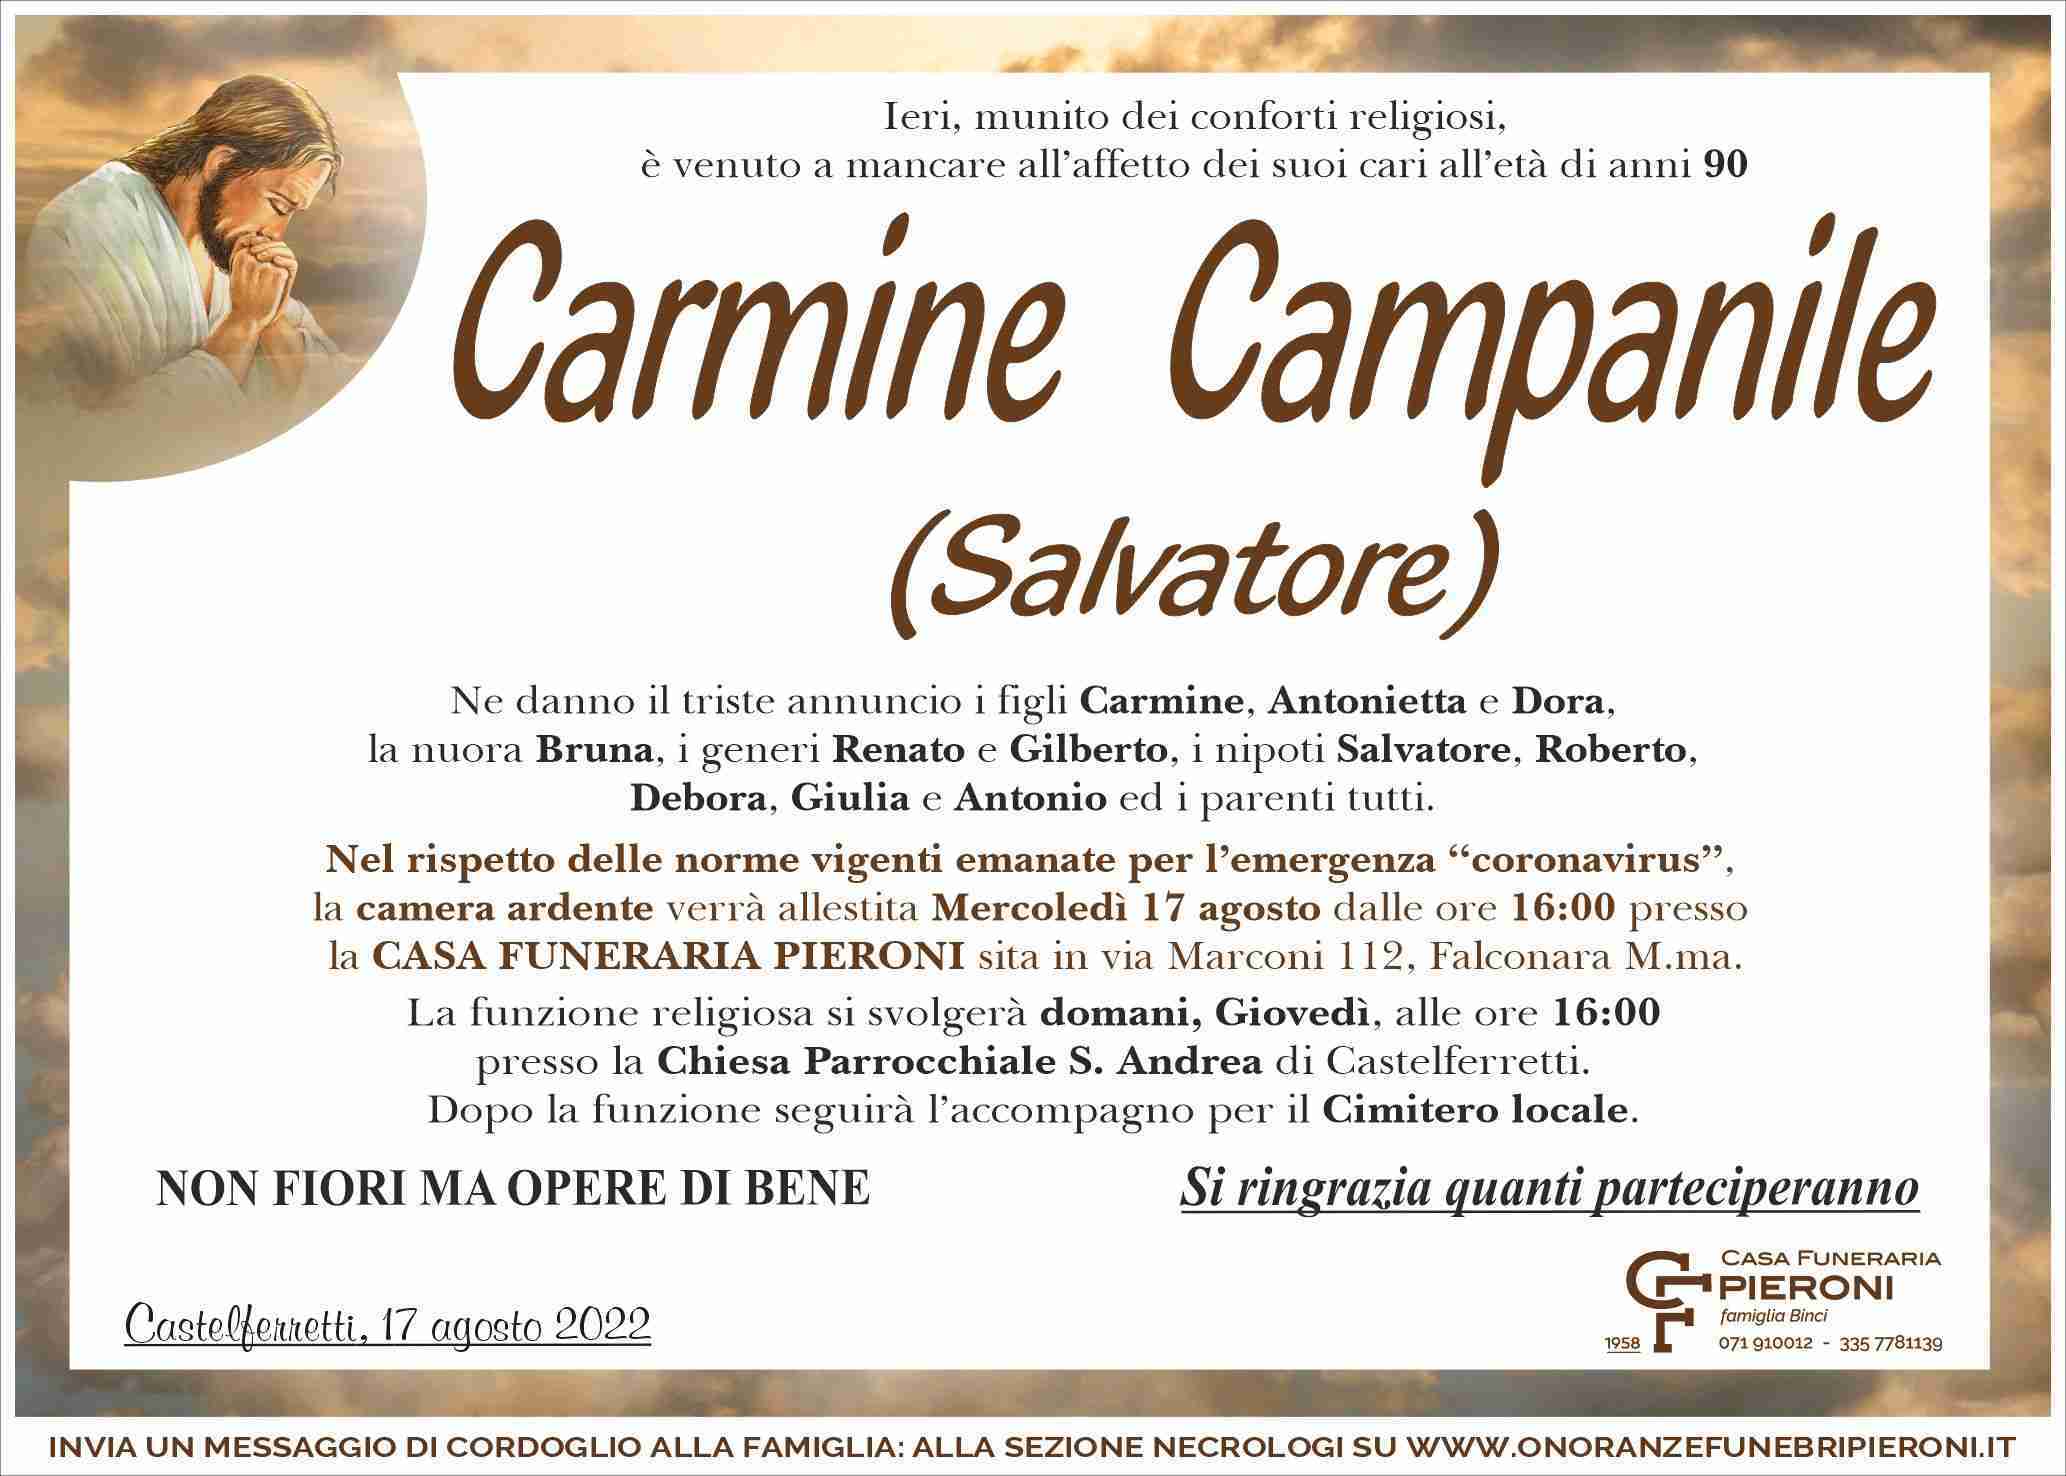 Carmine Campanile